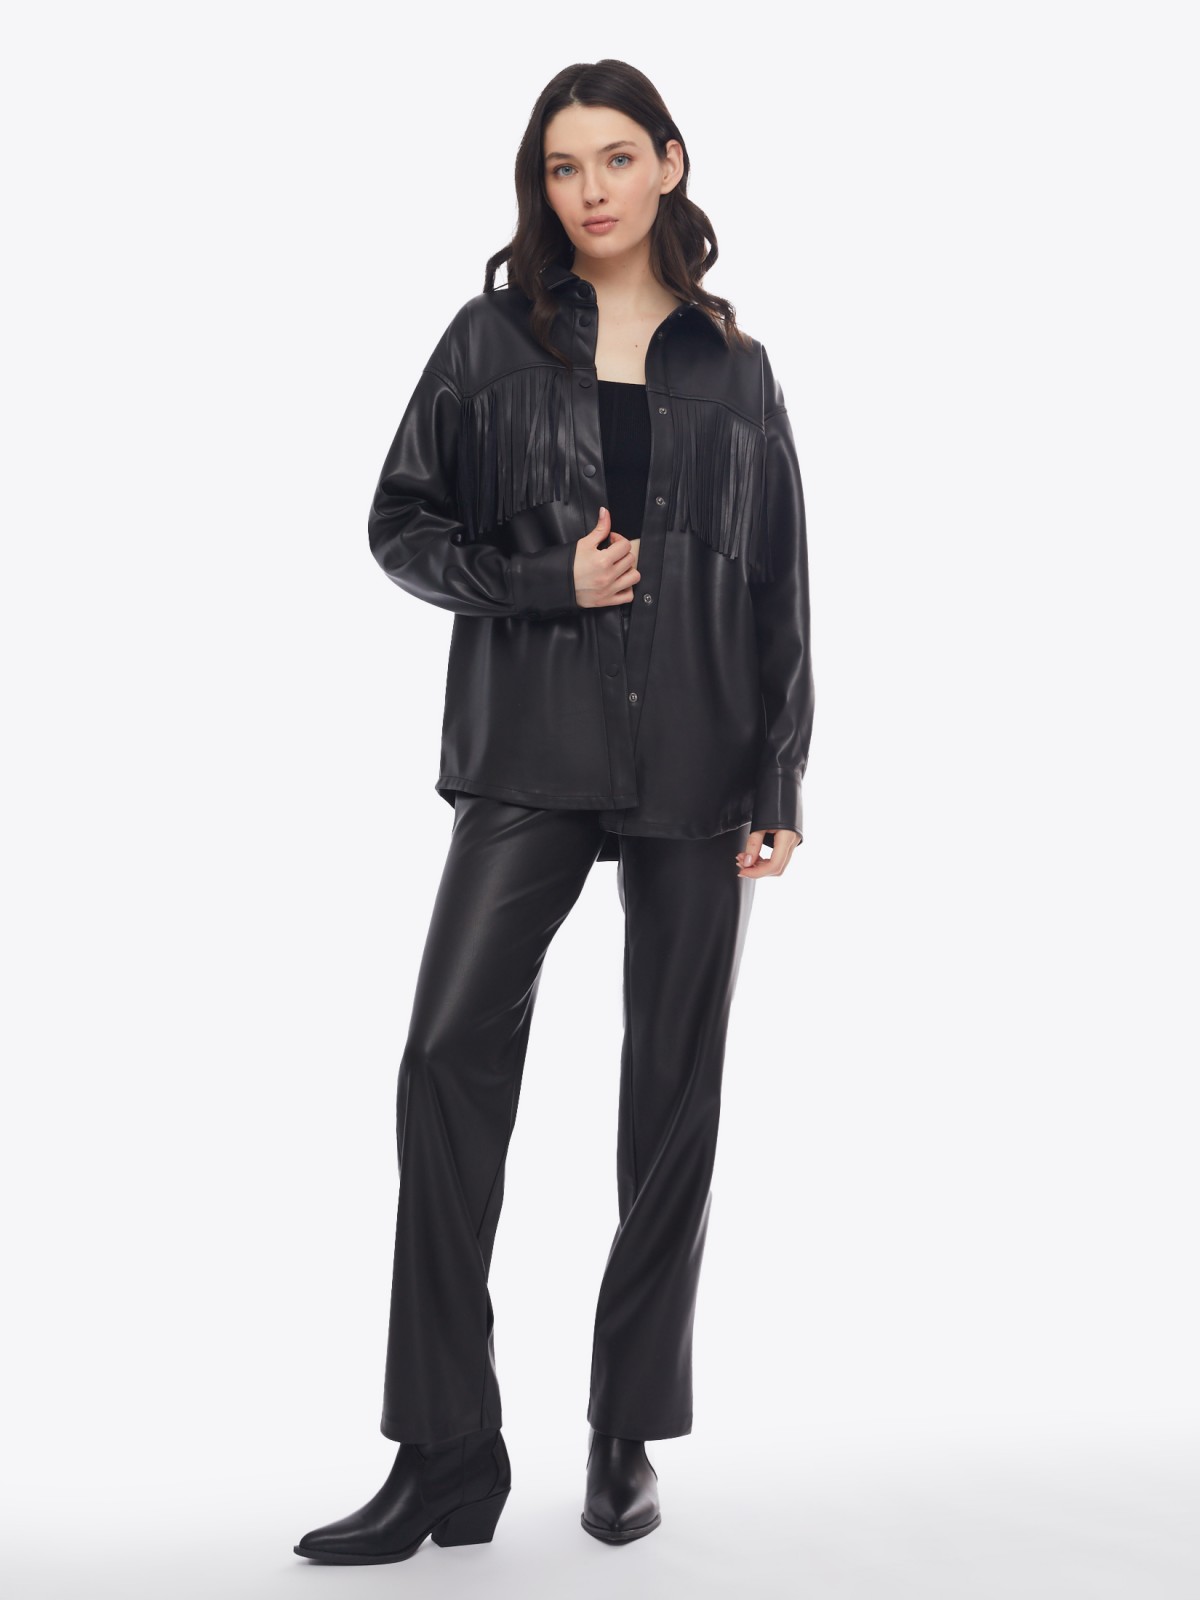 Куртка-рубашка из экокожи с бахромой на кокетке zolla 02413540L051, цвет черный, размер S - фото 2